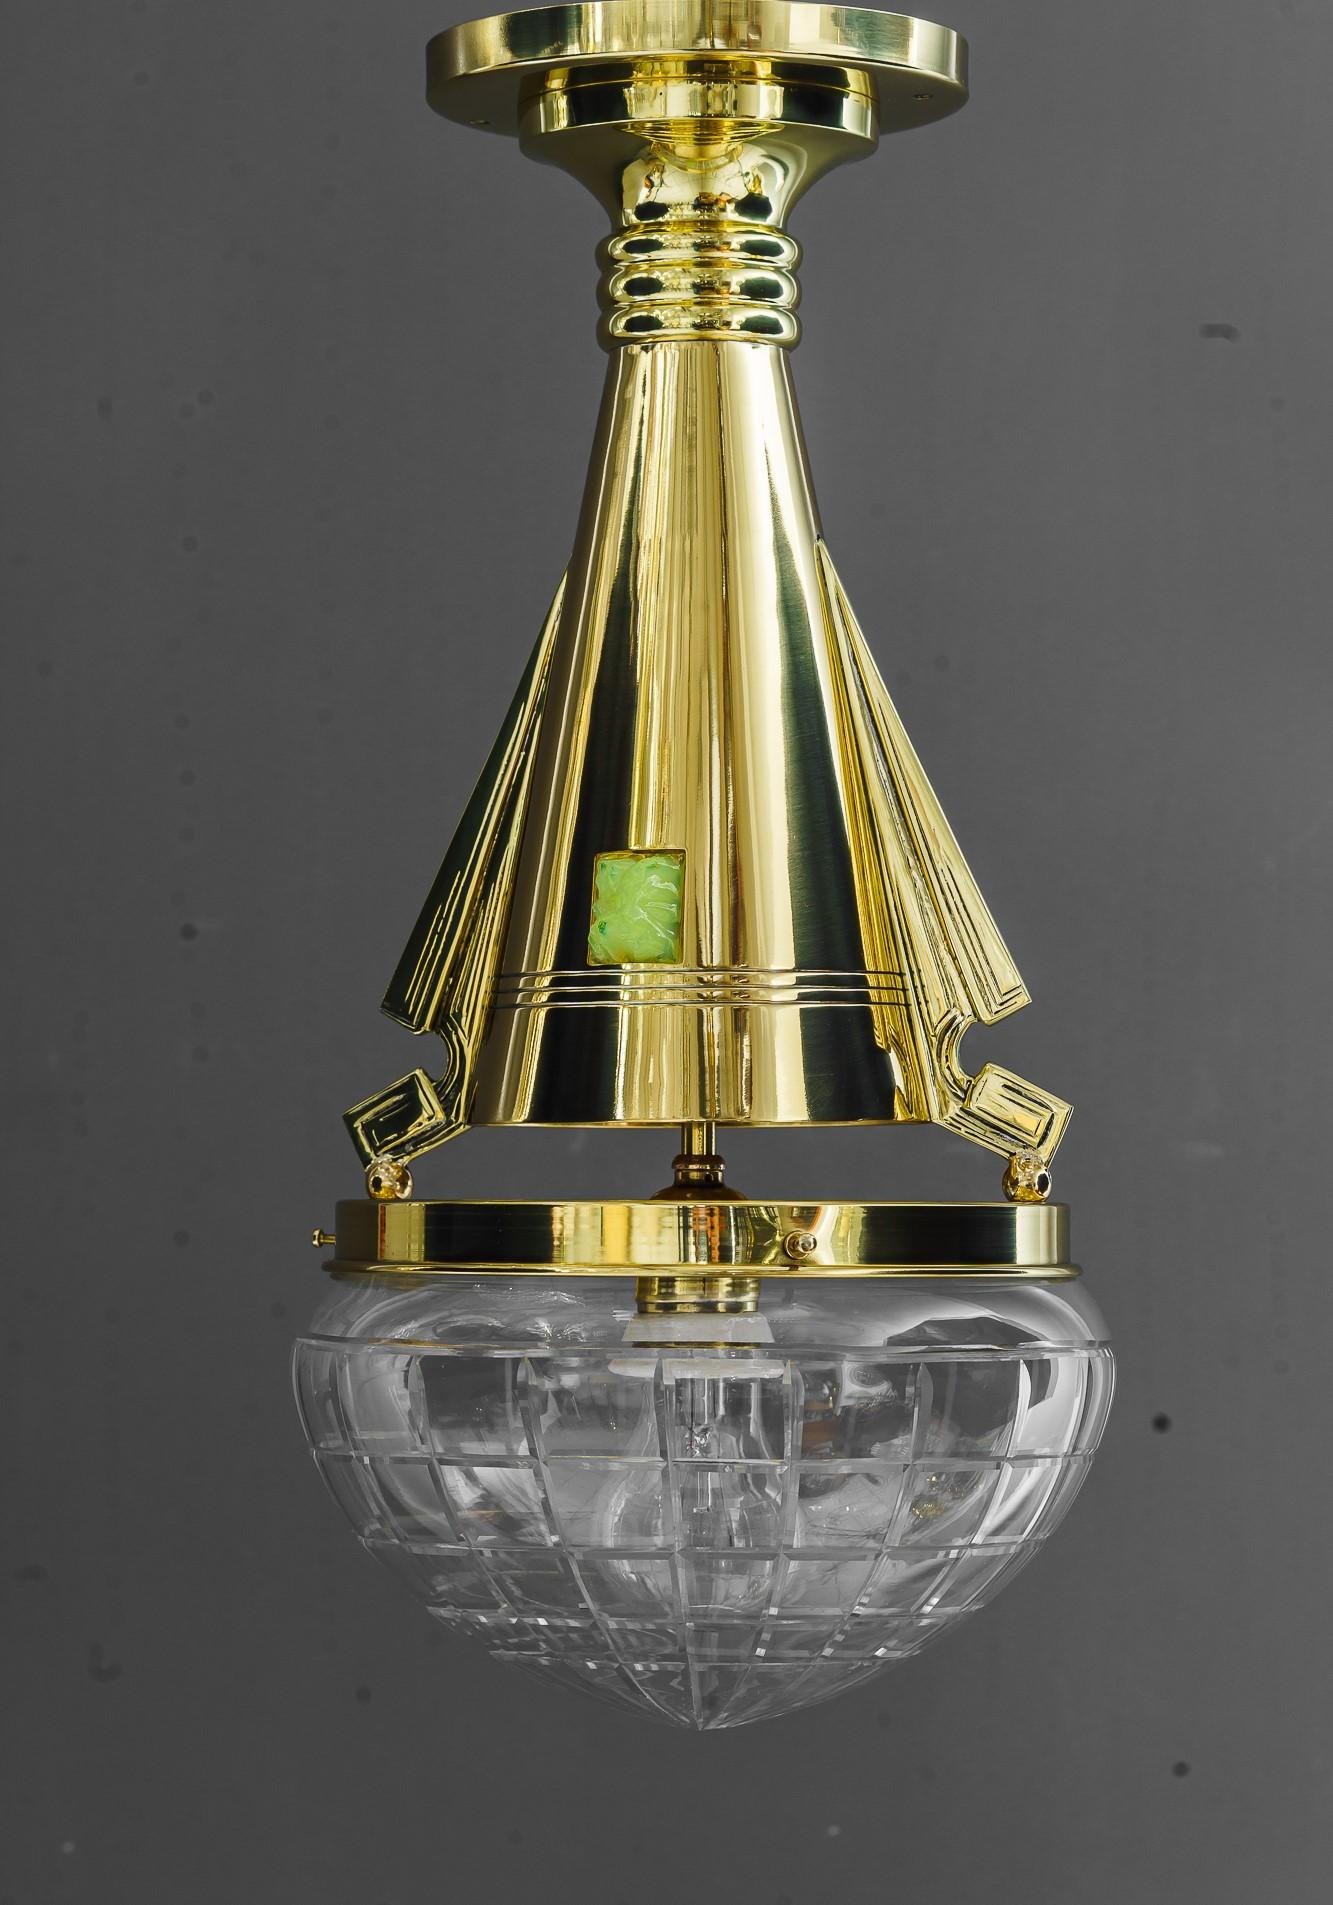 Art Deco Deckenleuchte  mit Opalglas und geschliffenem Glas, Wien um 1920
Messing poliert und emailliert
Original geschliffener Glasschirm
Original Opalglassteine